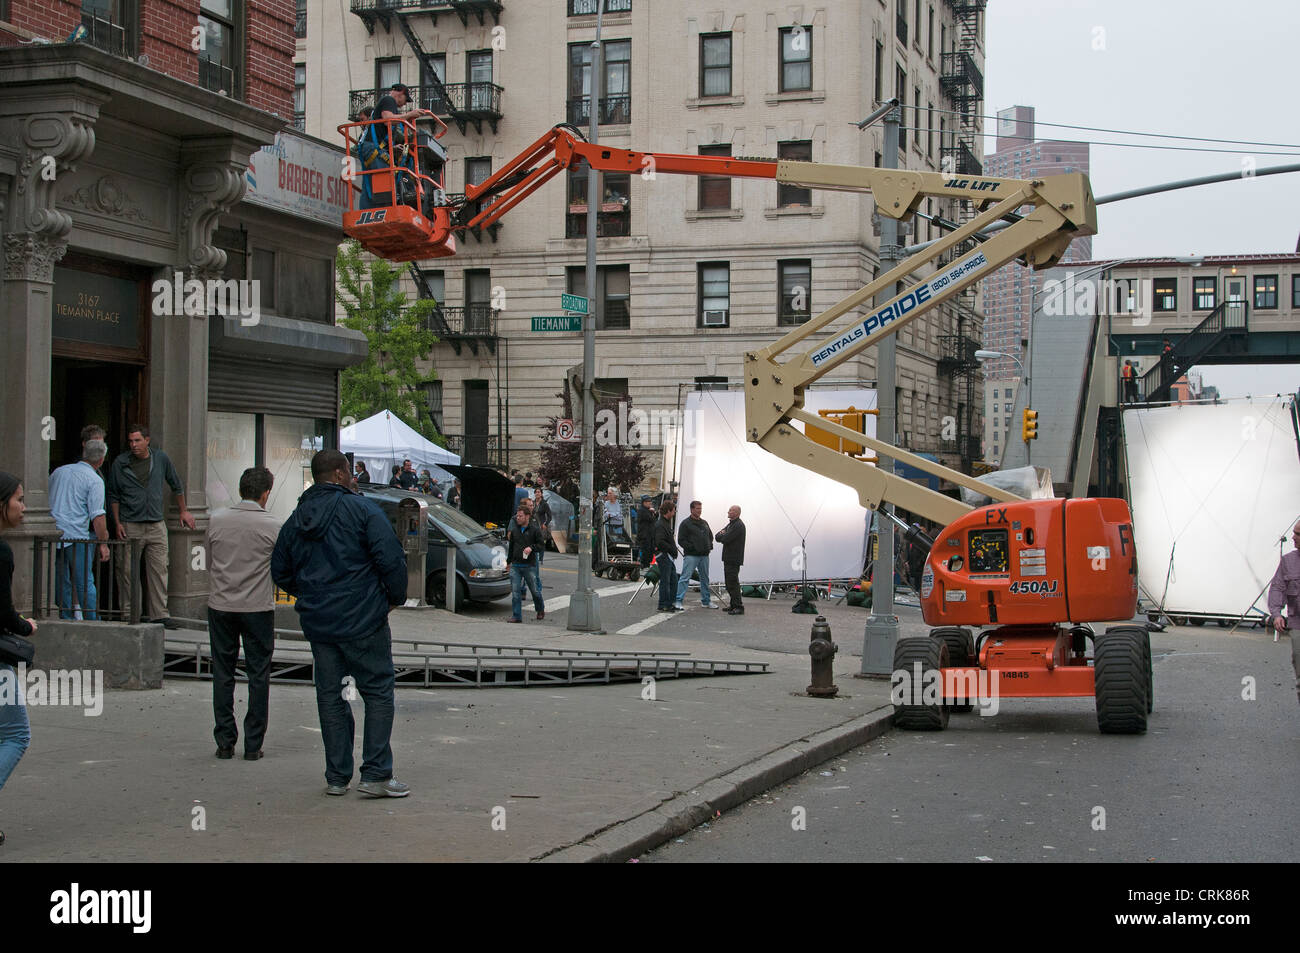 Película ambientada con tripulación y reflectores en Broadway & Tiemann lugar Nueva York, EE.UU. Foto de stock